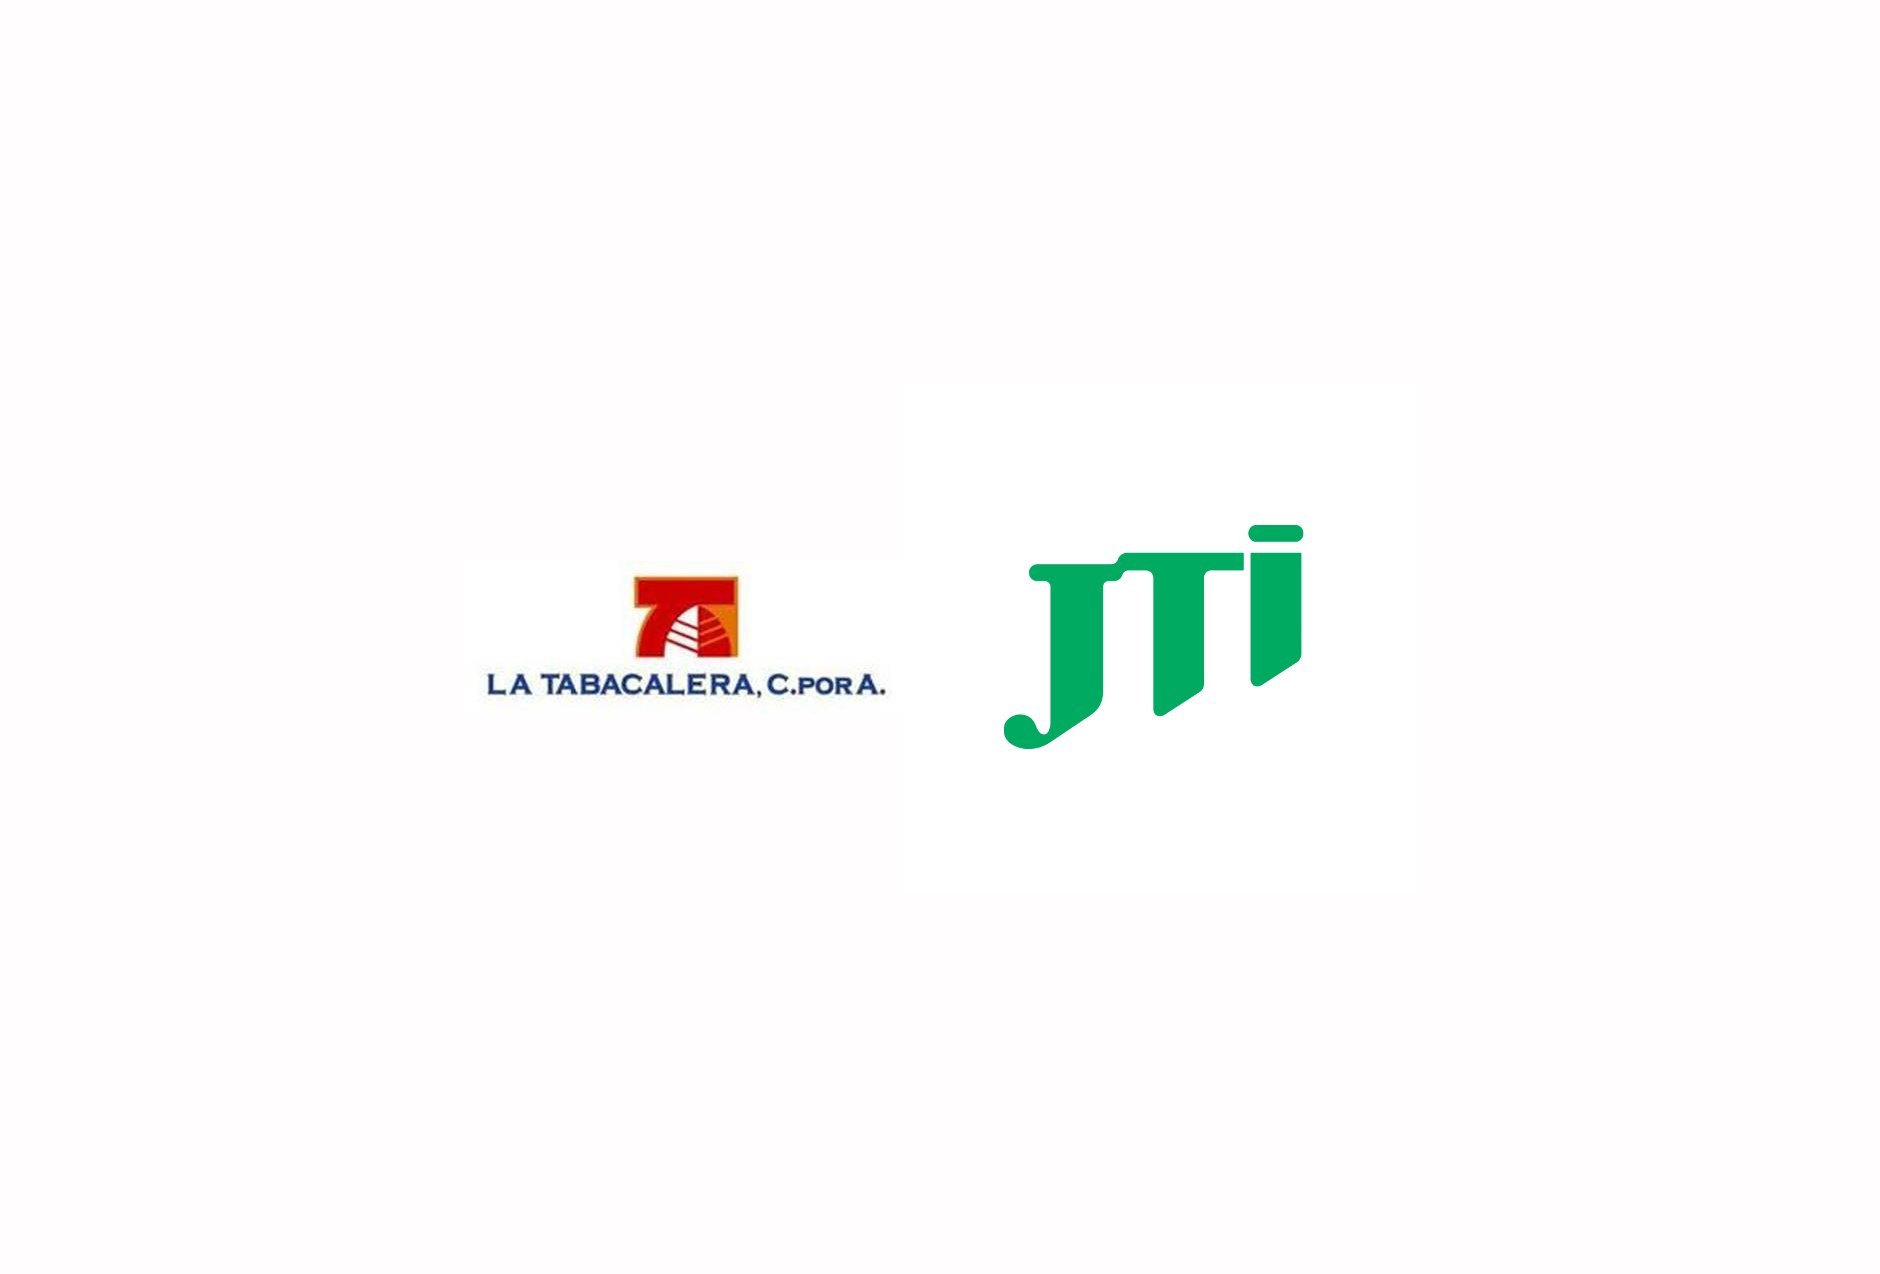 JTI acquired majority share in La Tabacalera